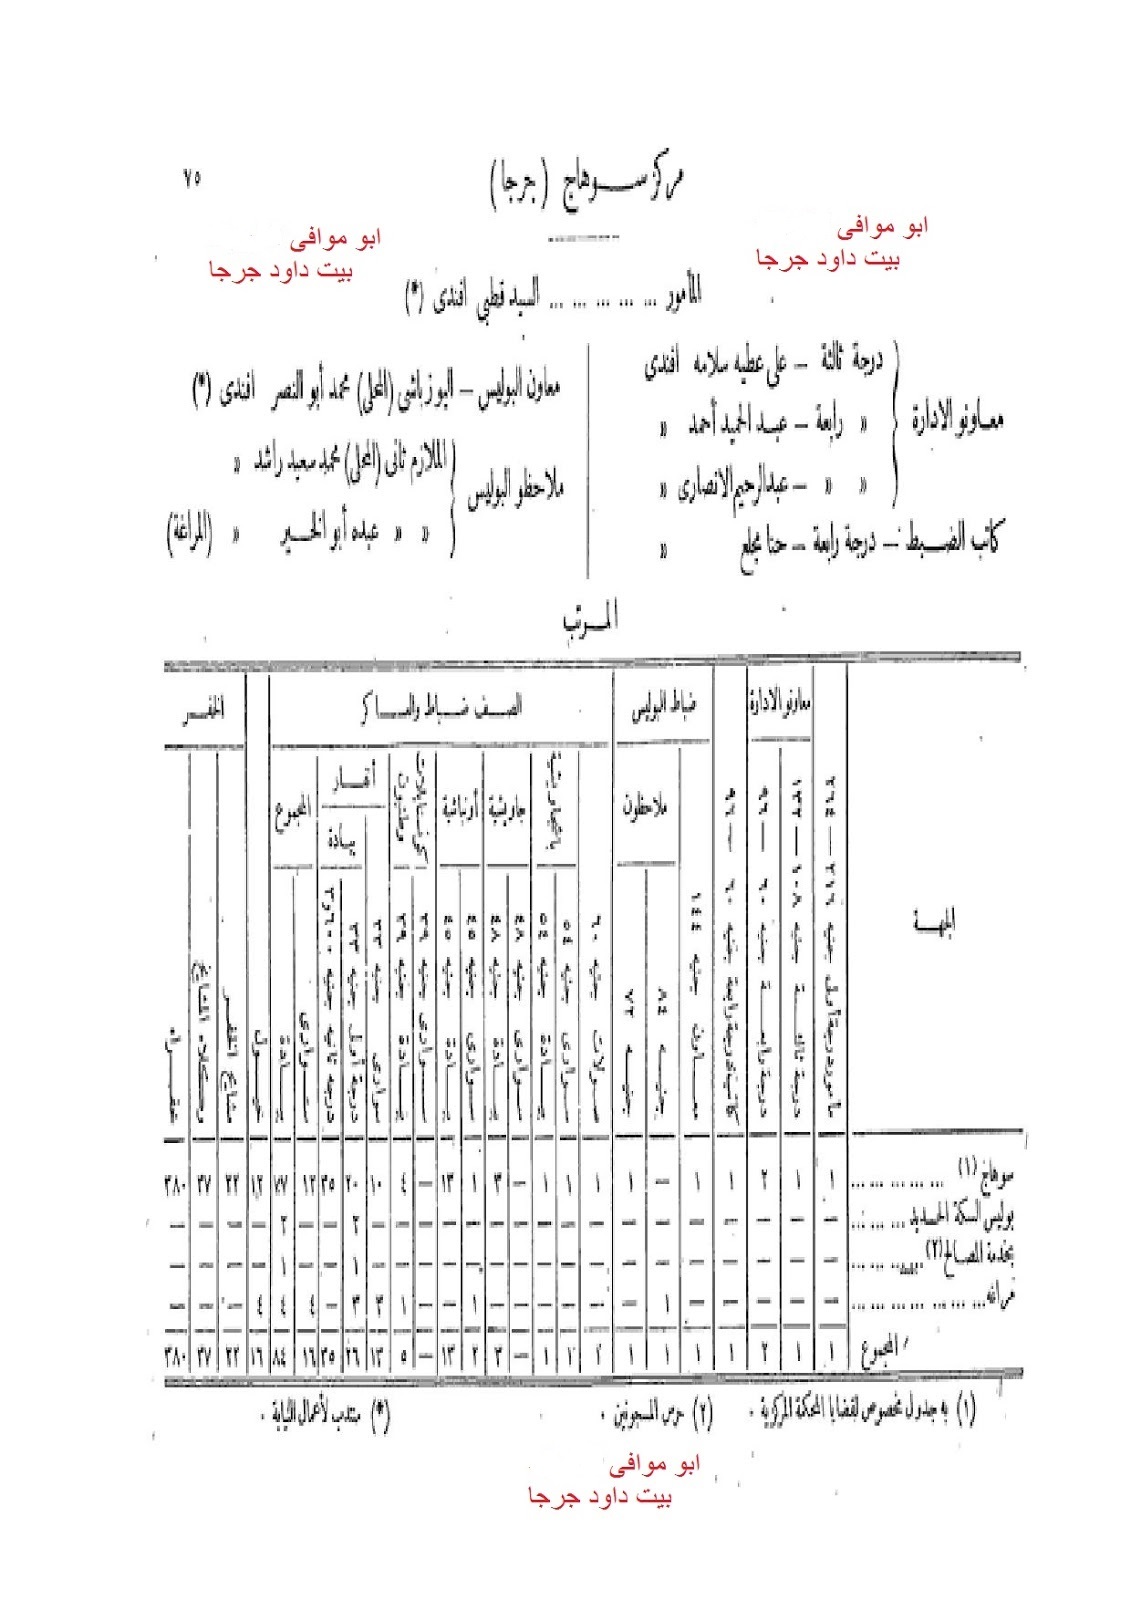 تاريخ جرجا توزيع مدرية جرجا عام 1916 العمد و المشايخ و عدد سكان النواحى و زمام كل قرية